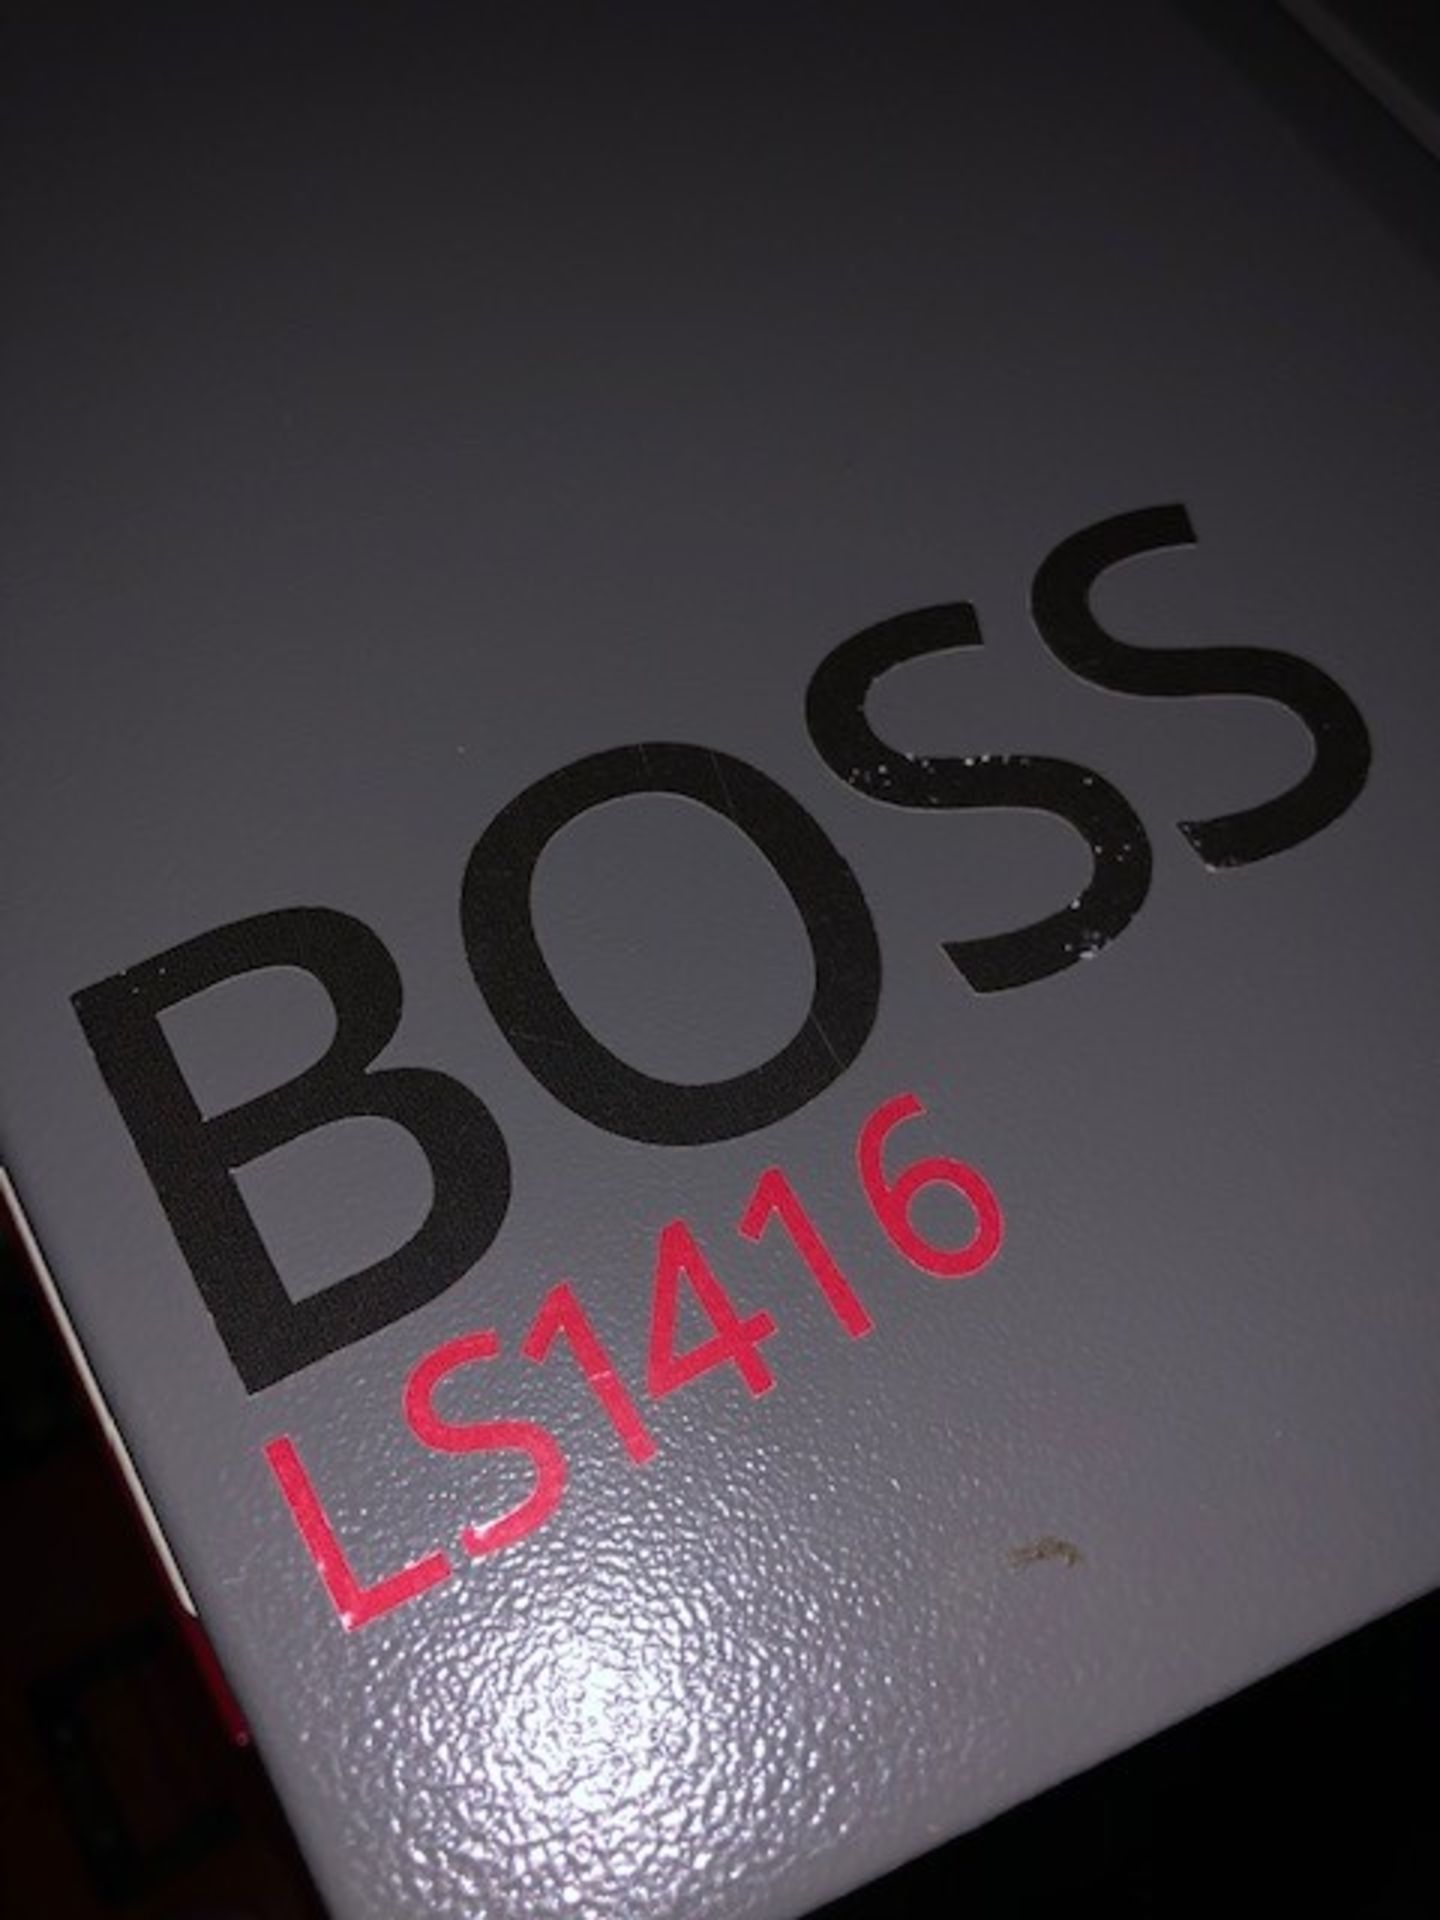 Boss LS1416 laser Engraving Cutting Machine - Image 3 of 5